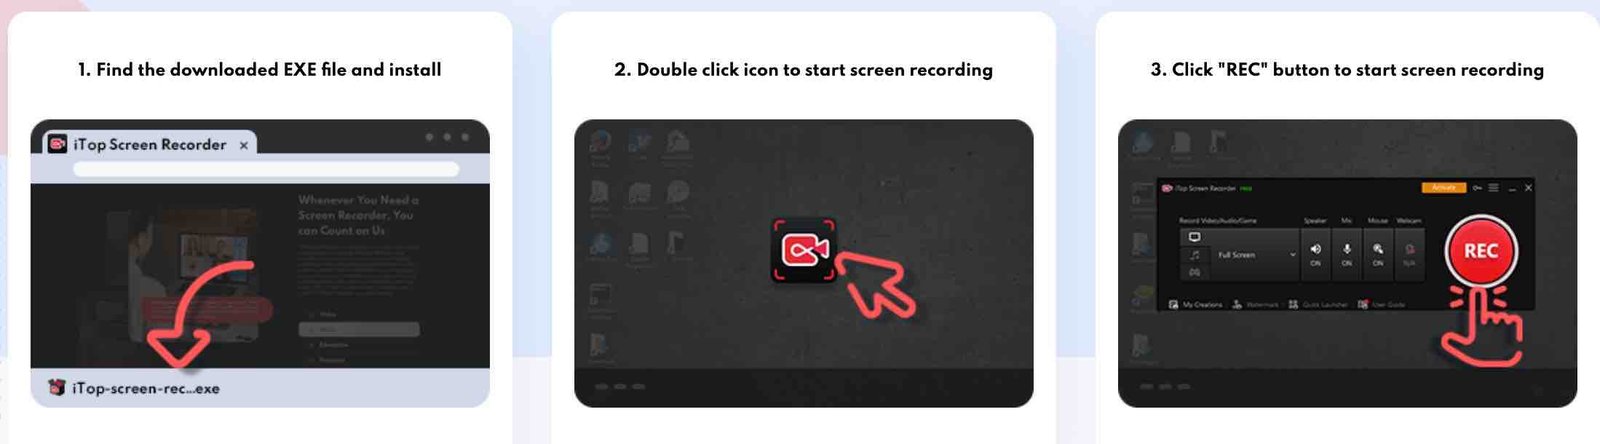 iTop Screen Recorder Gratis Untuk PC